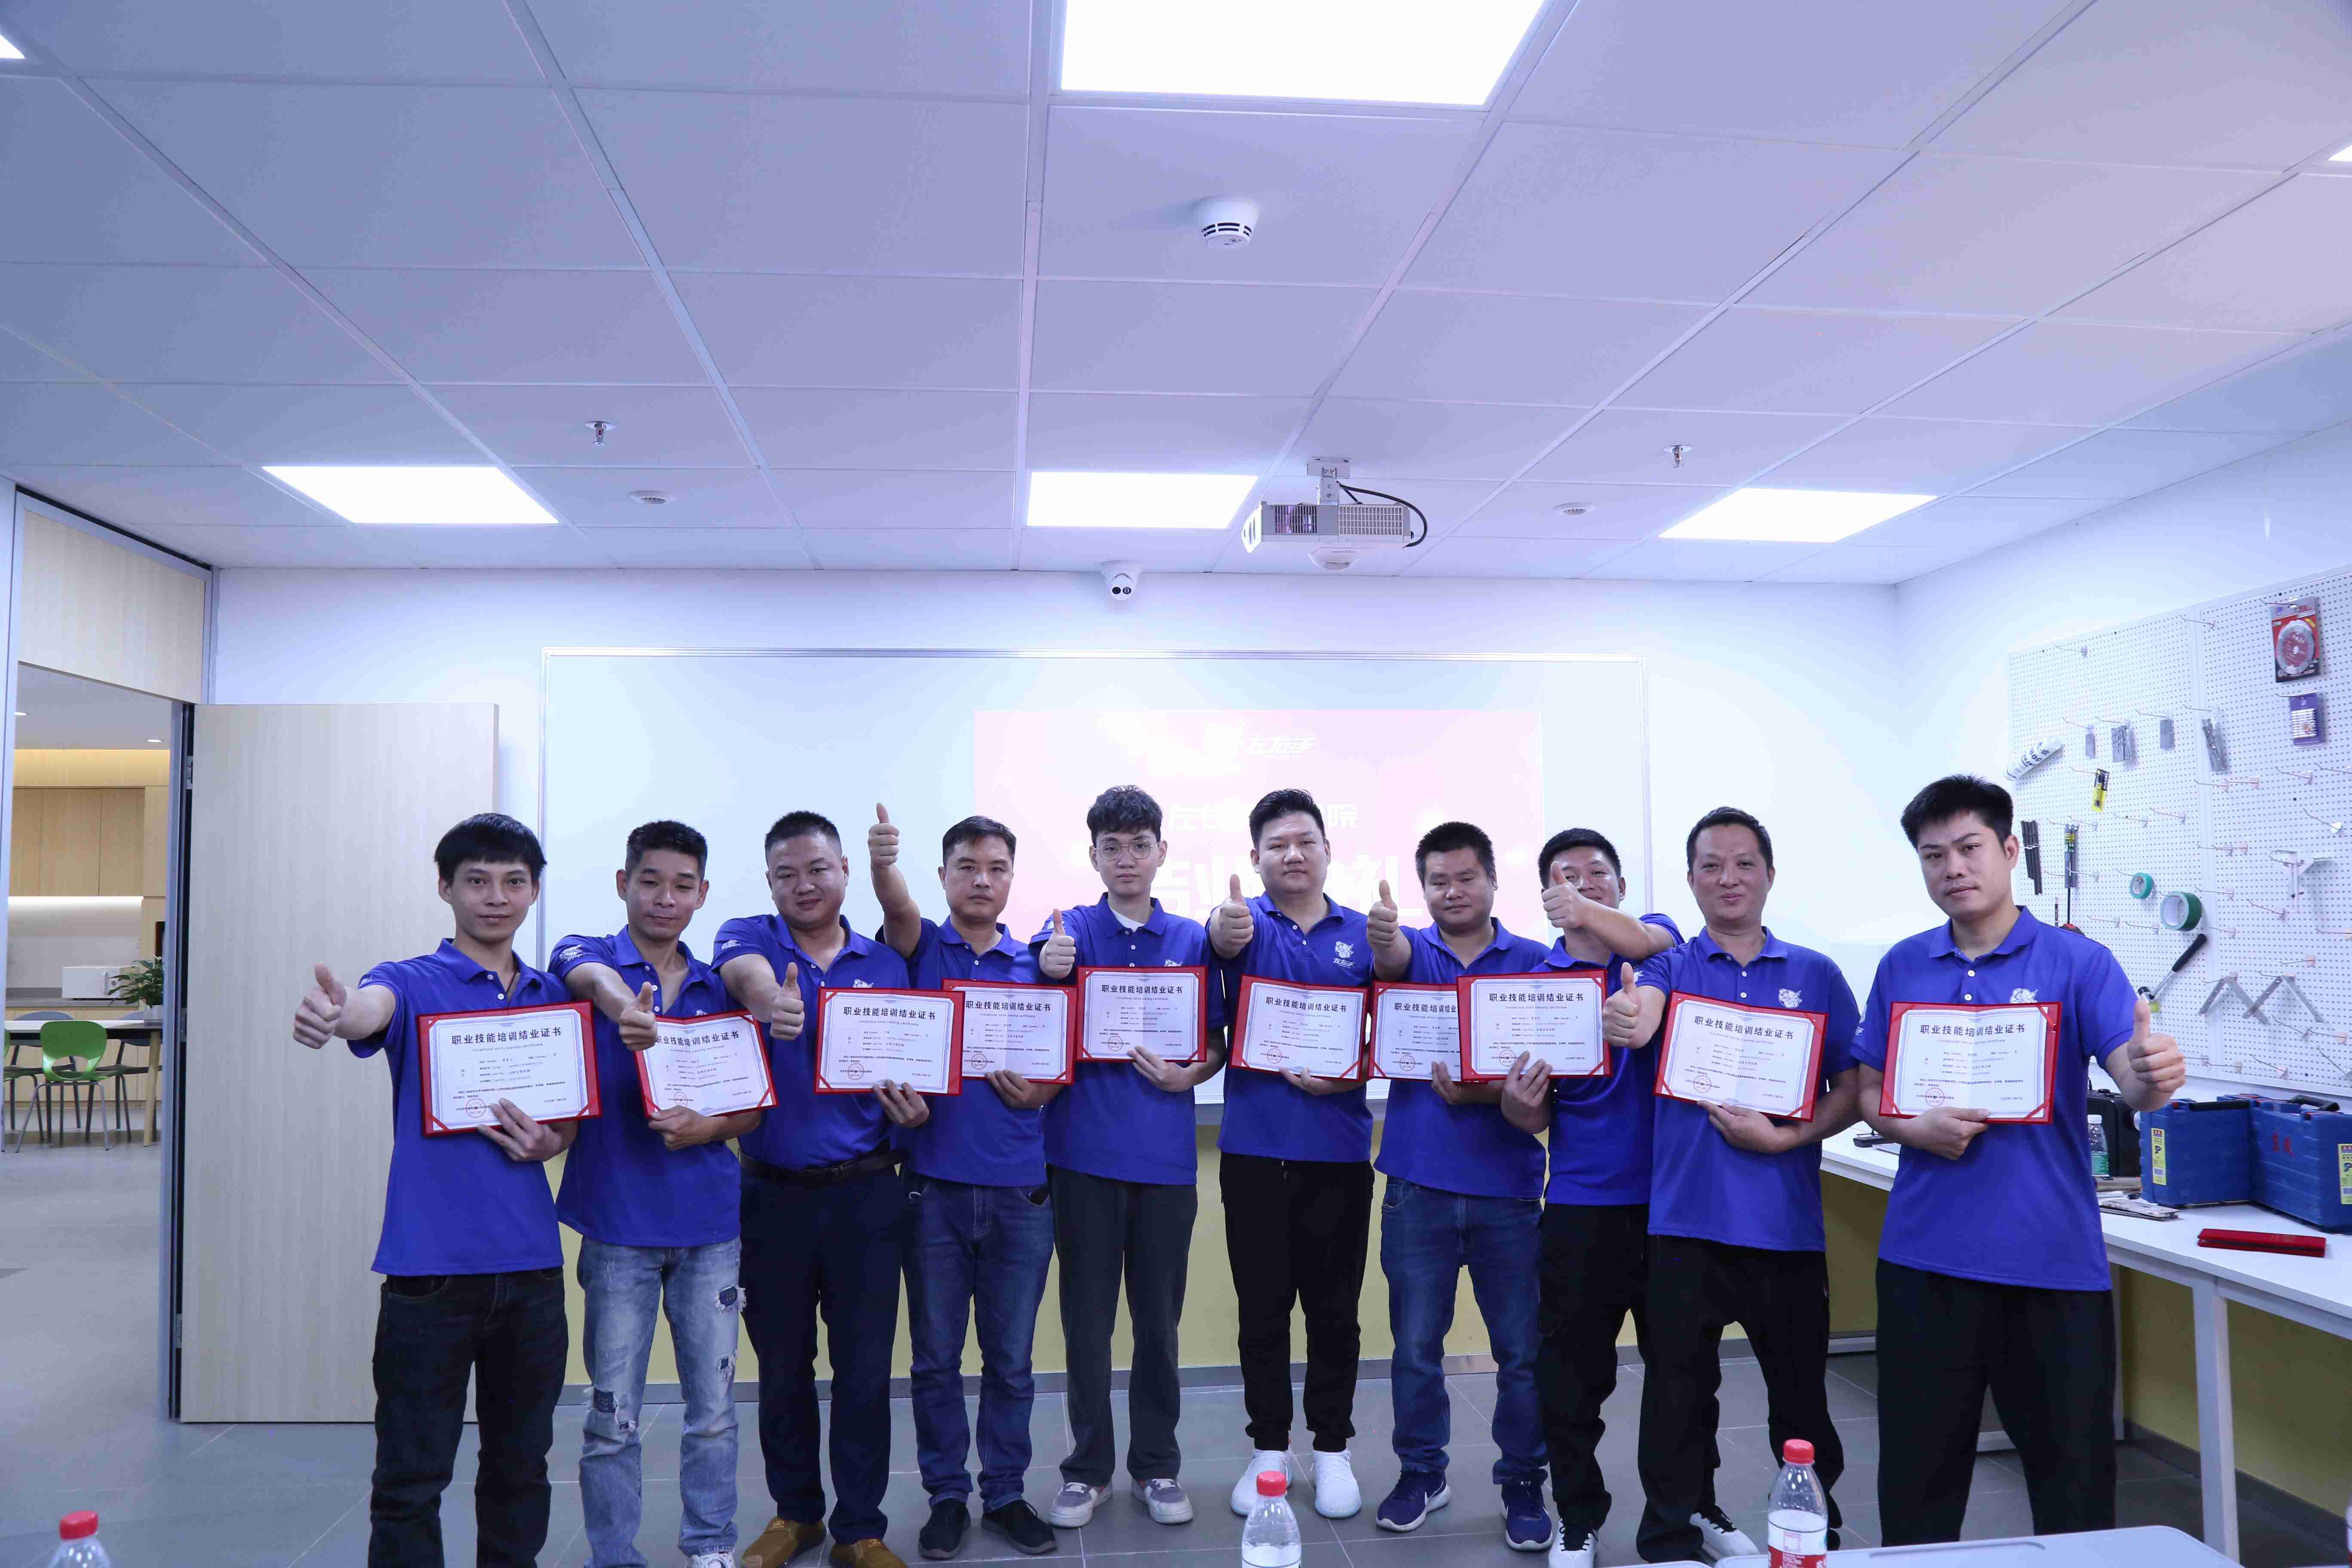 左右手深圳商學院第一批畢業學員集體